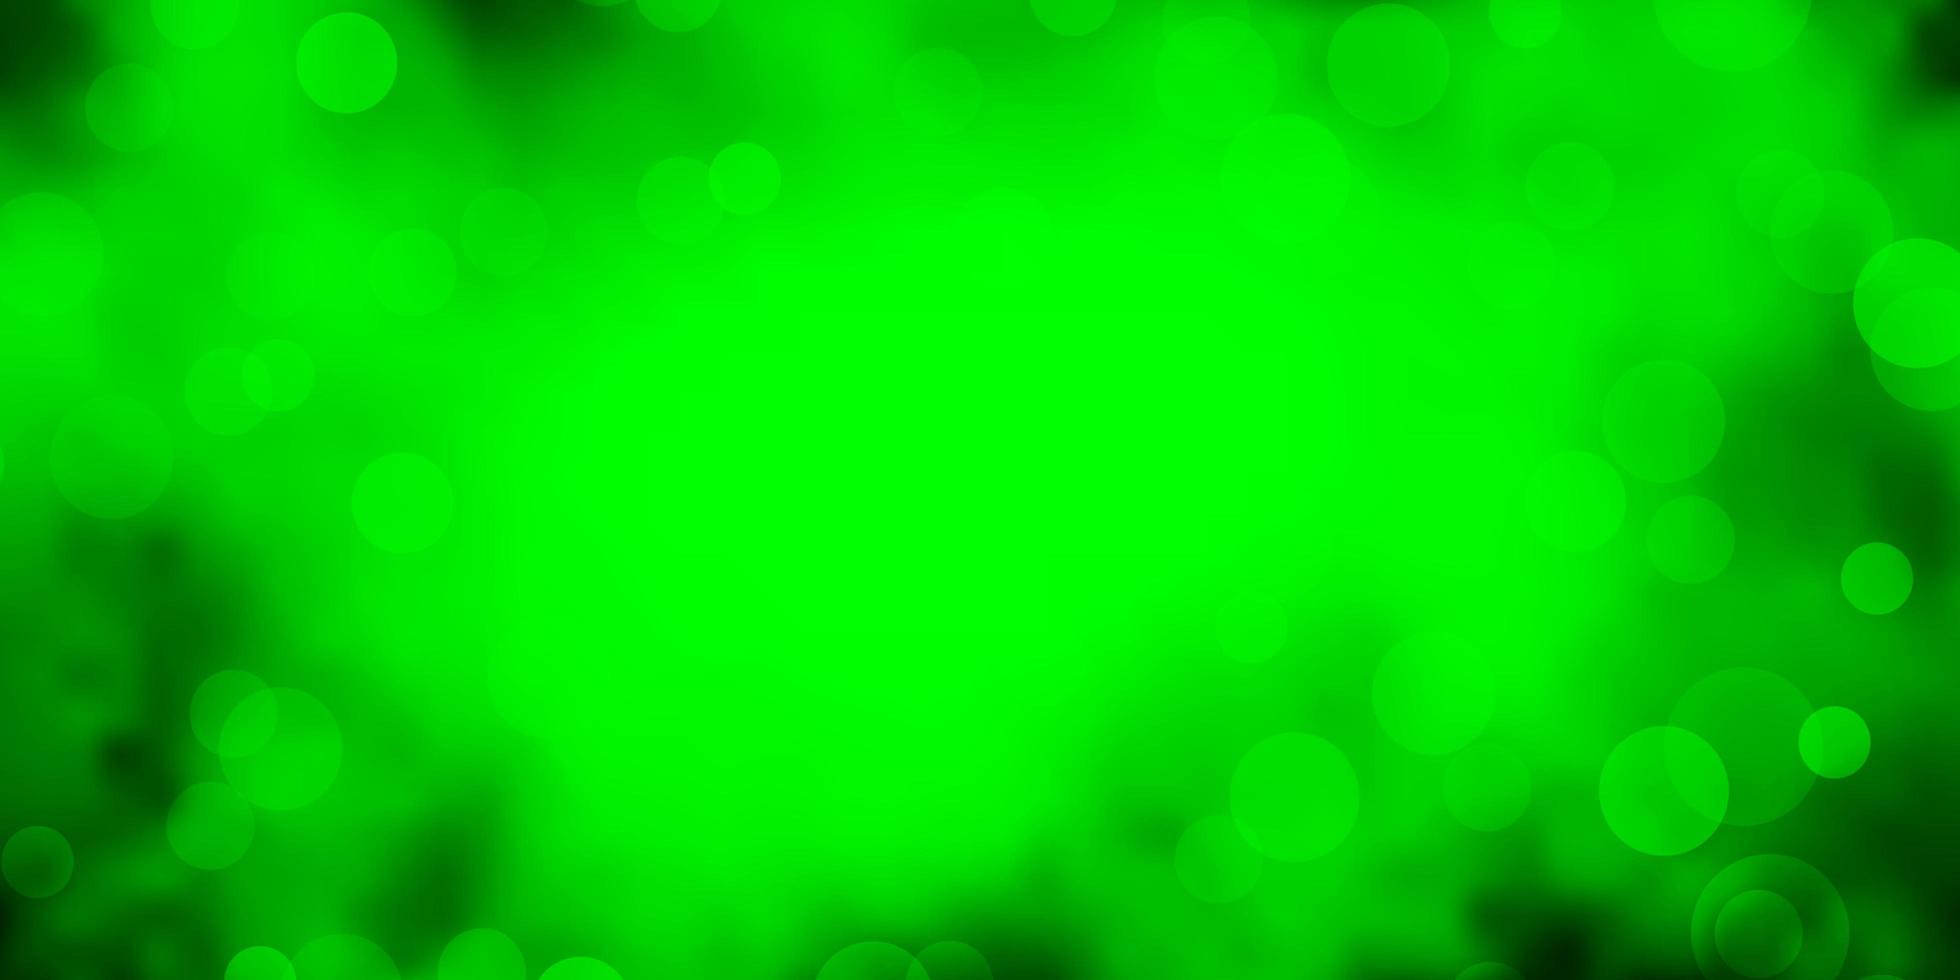 ljusgrön, gul vektorbakgrund med cirklar. vektor